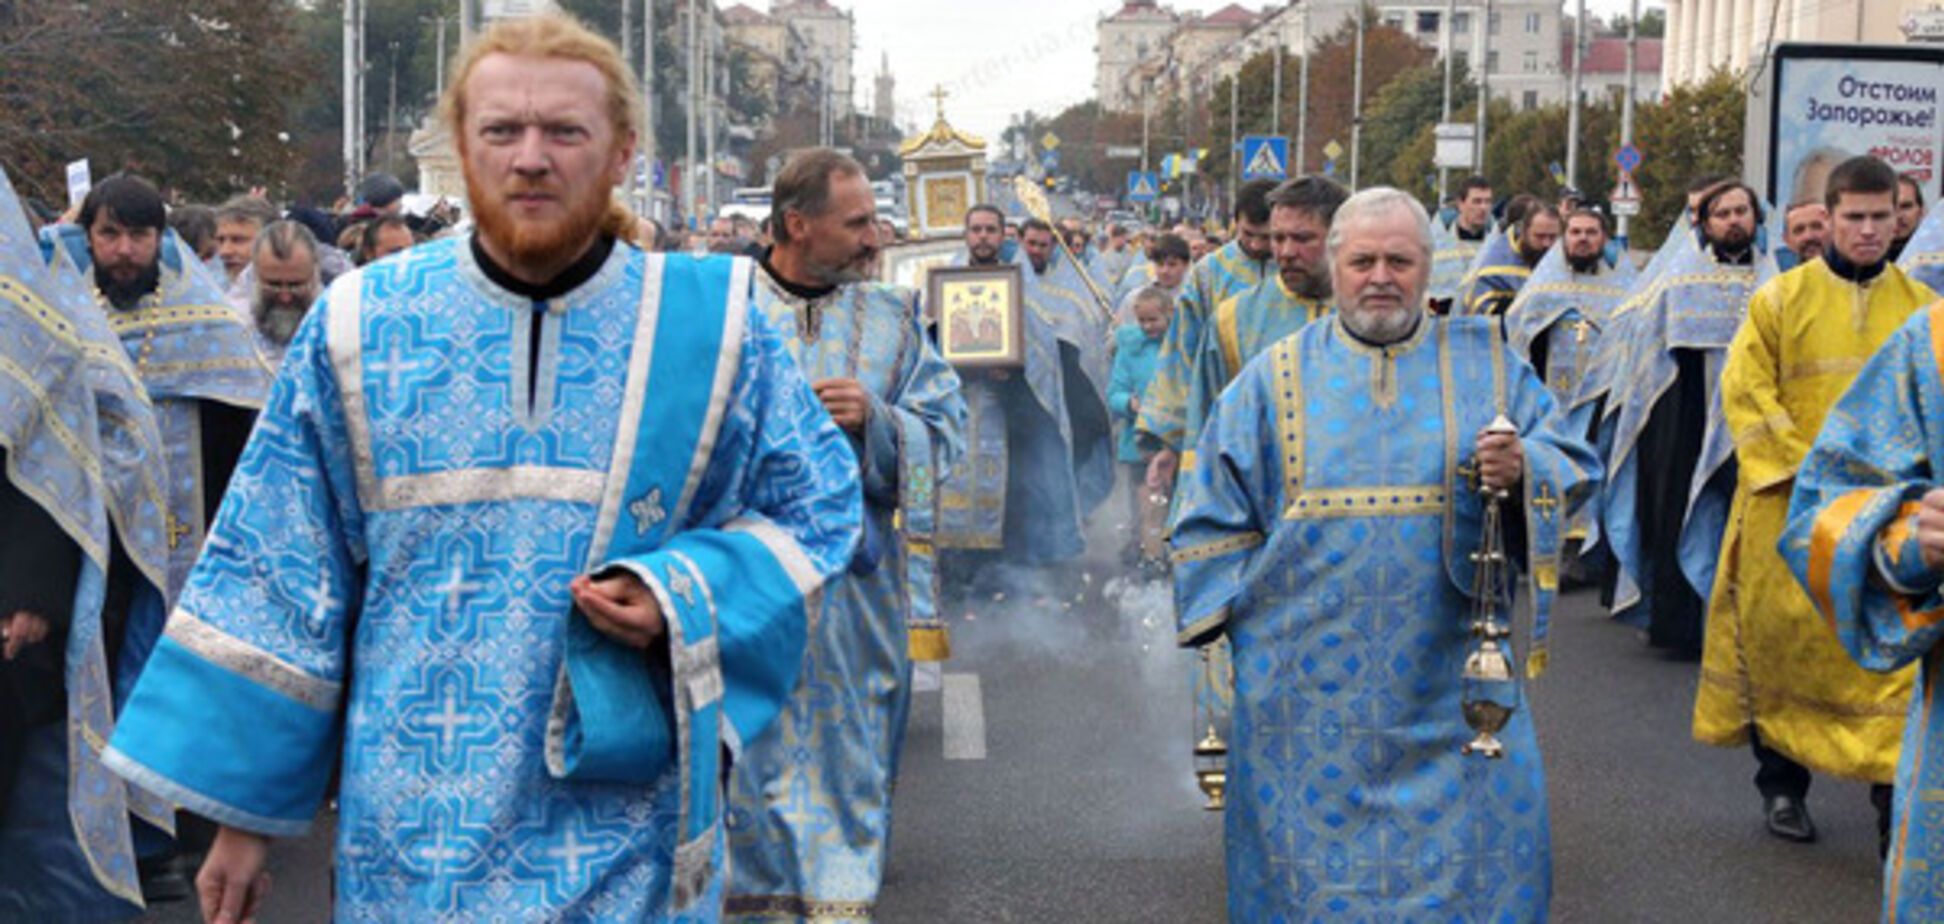 В воскресенье православная церковь проведет крестный ход в Запорожье